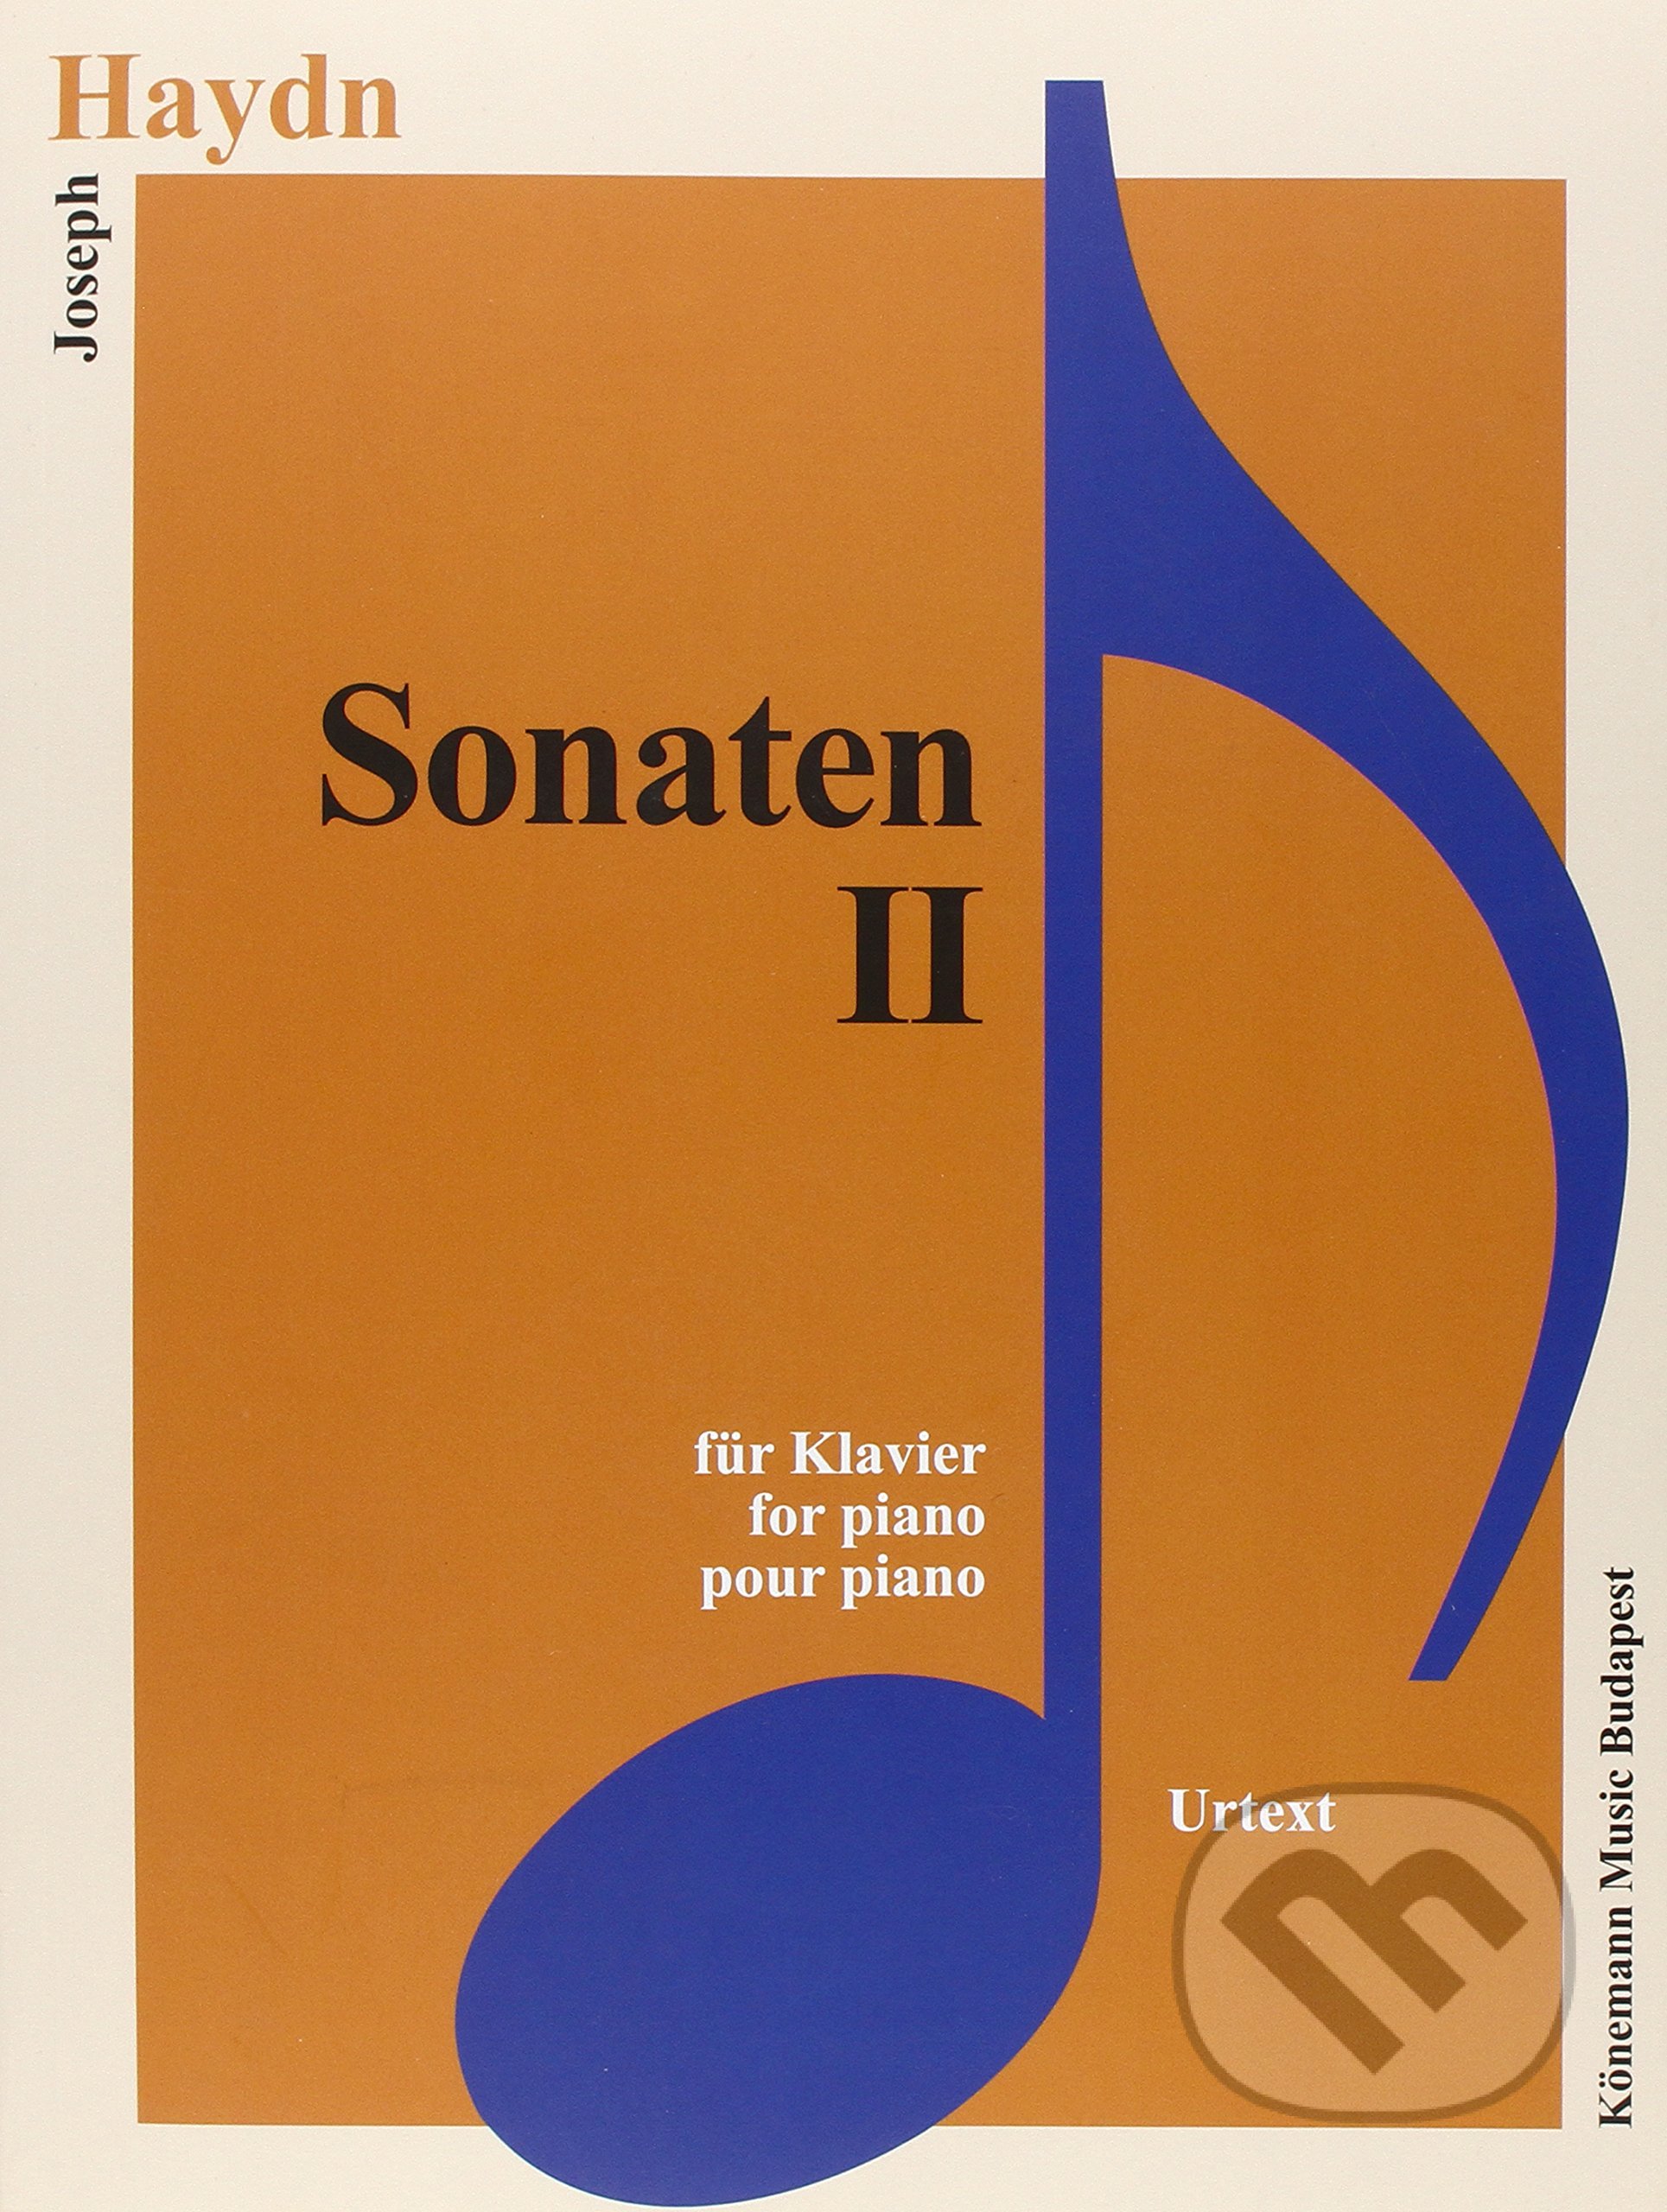 Sonaten II - Joseph Haydn, Könemann Music Budapest, 2015